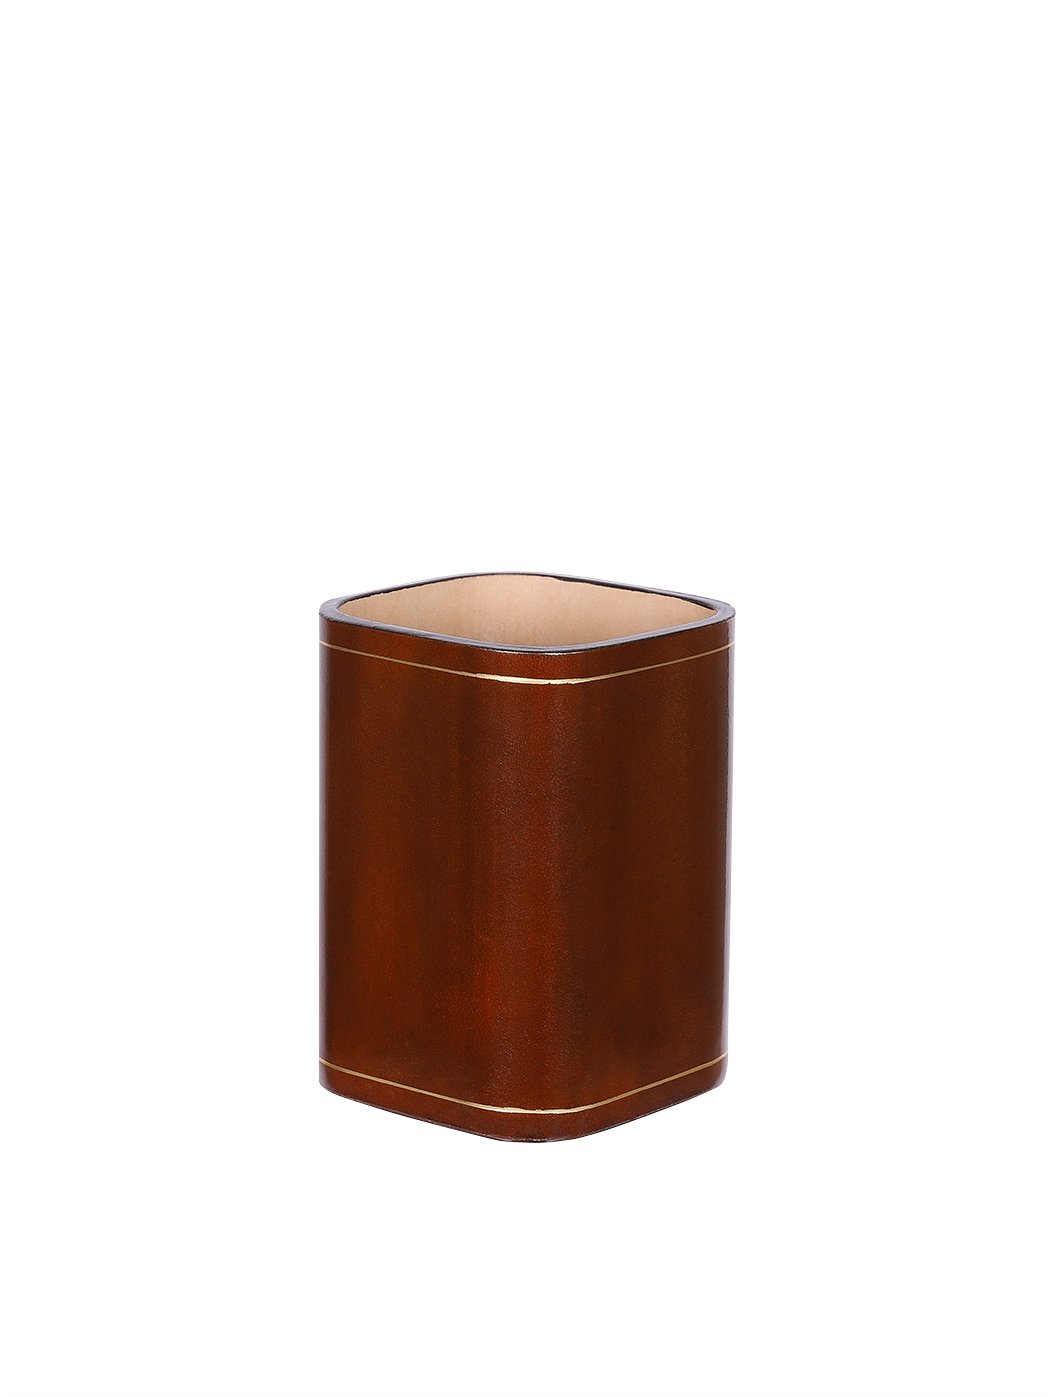 Desk Pen Holder Cup Leather Brown